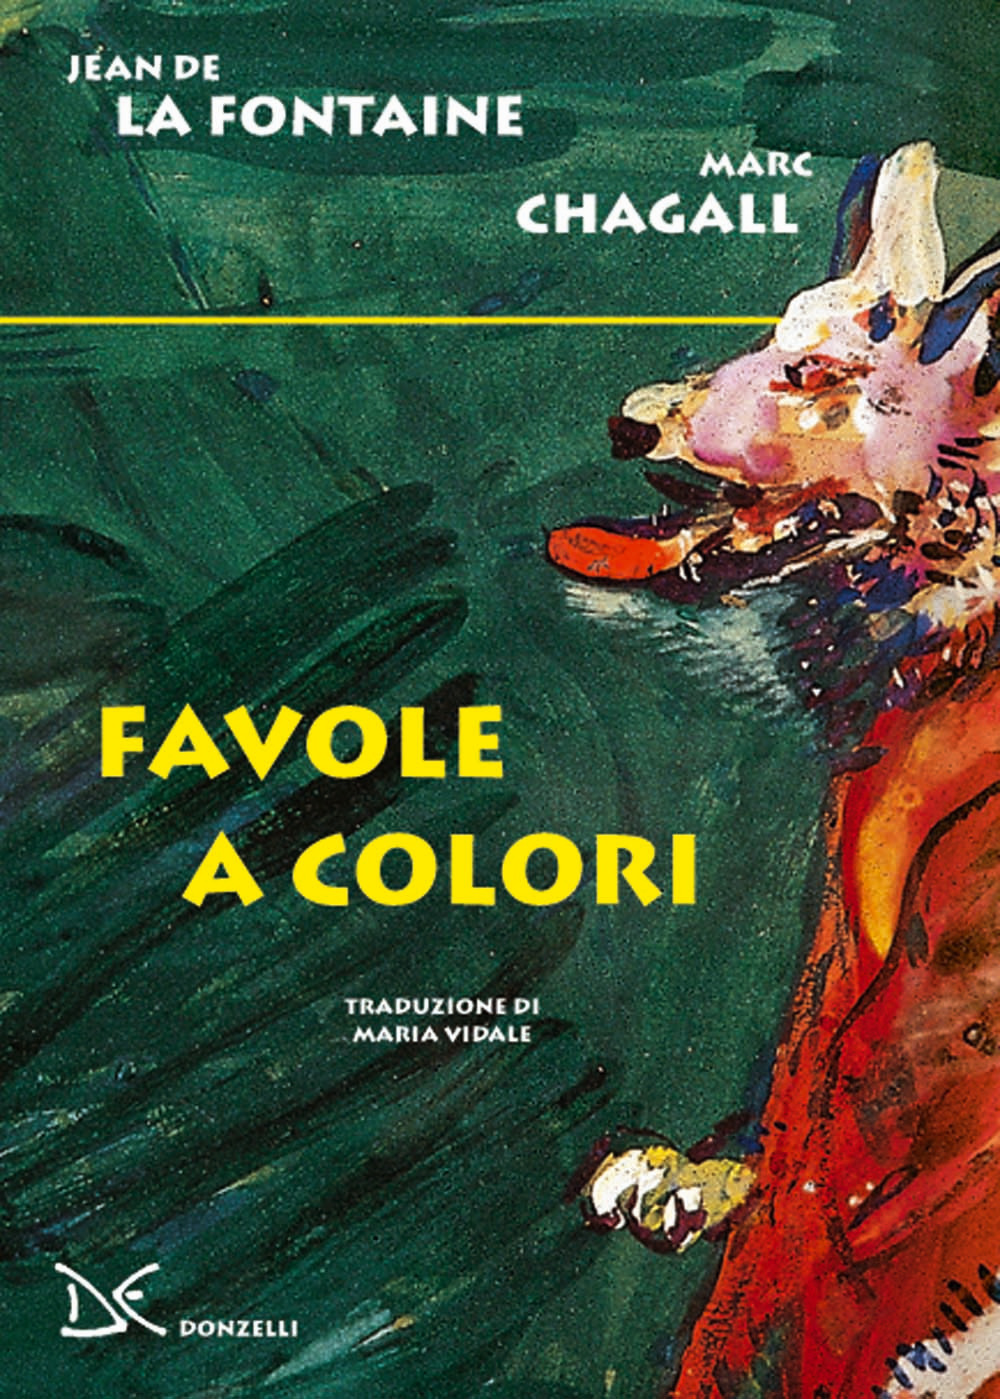 Libri La Fontaine Jean de Marc Chagall - Favole A Colori NUOVO SIGILLATO EDIZIONE DEL SUBITO DISPONIBILE